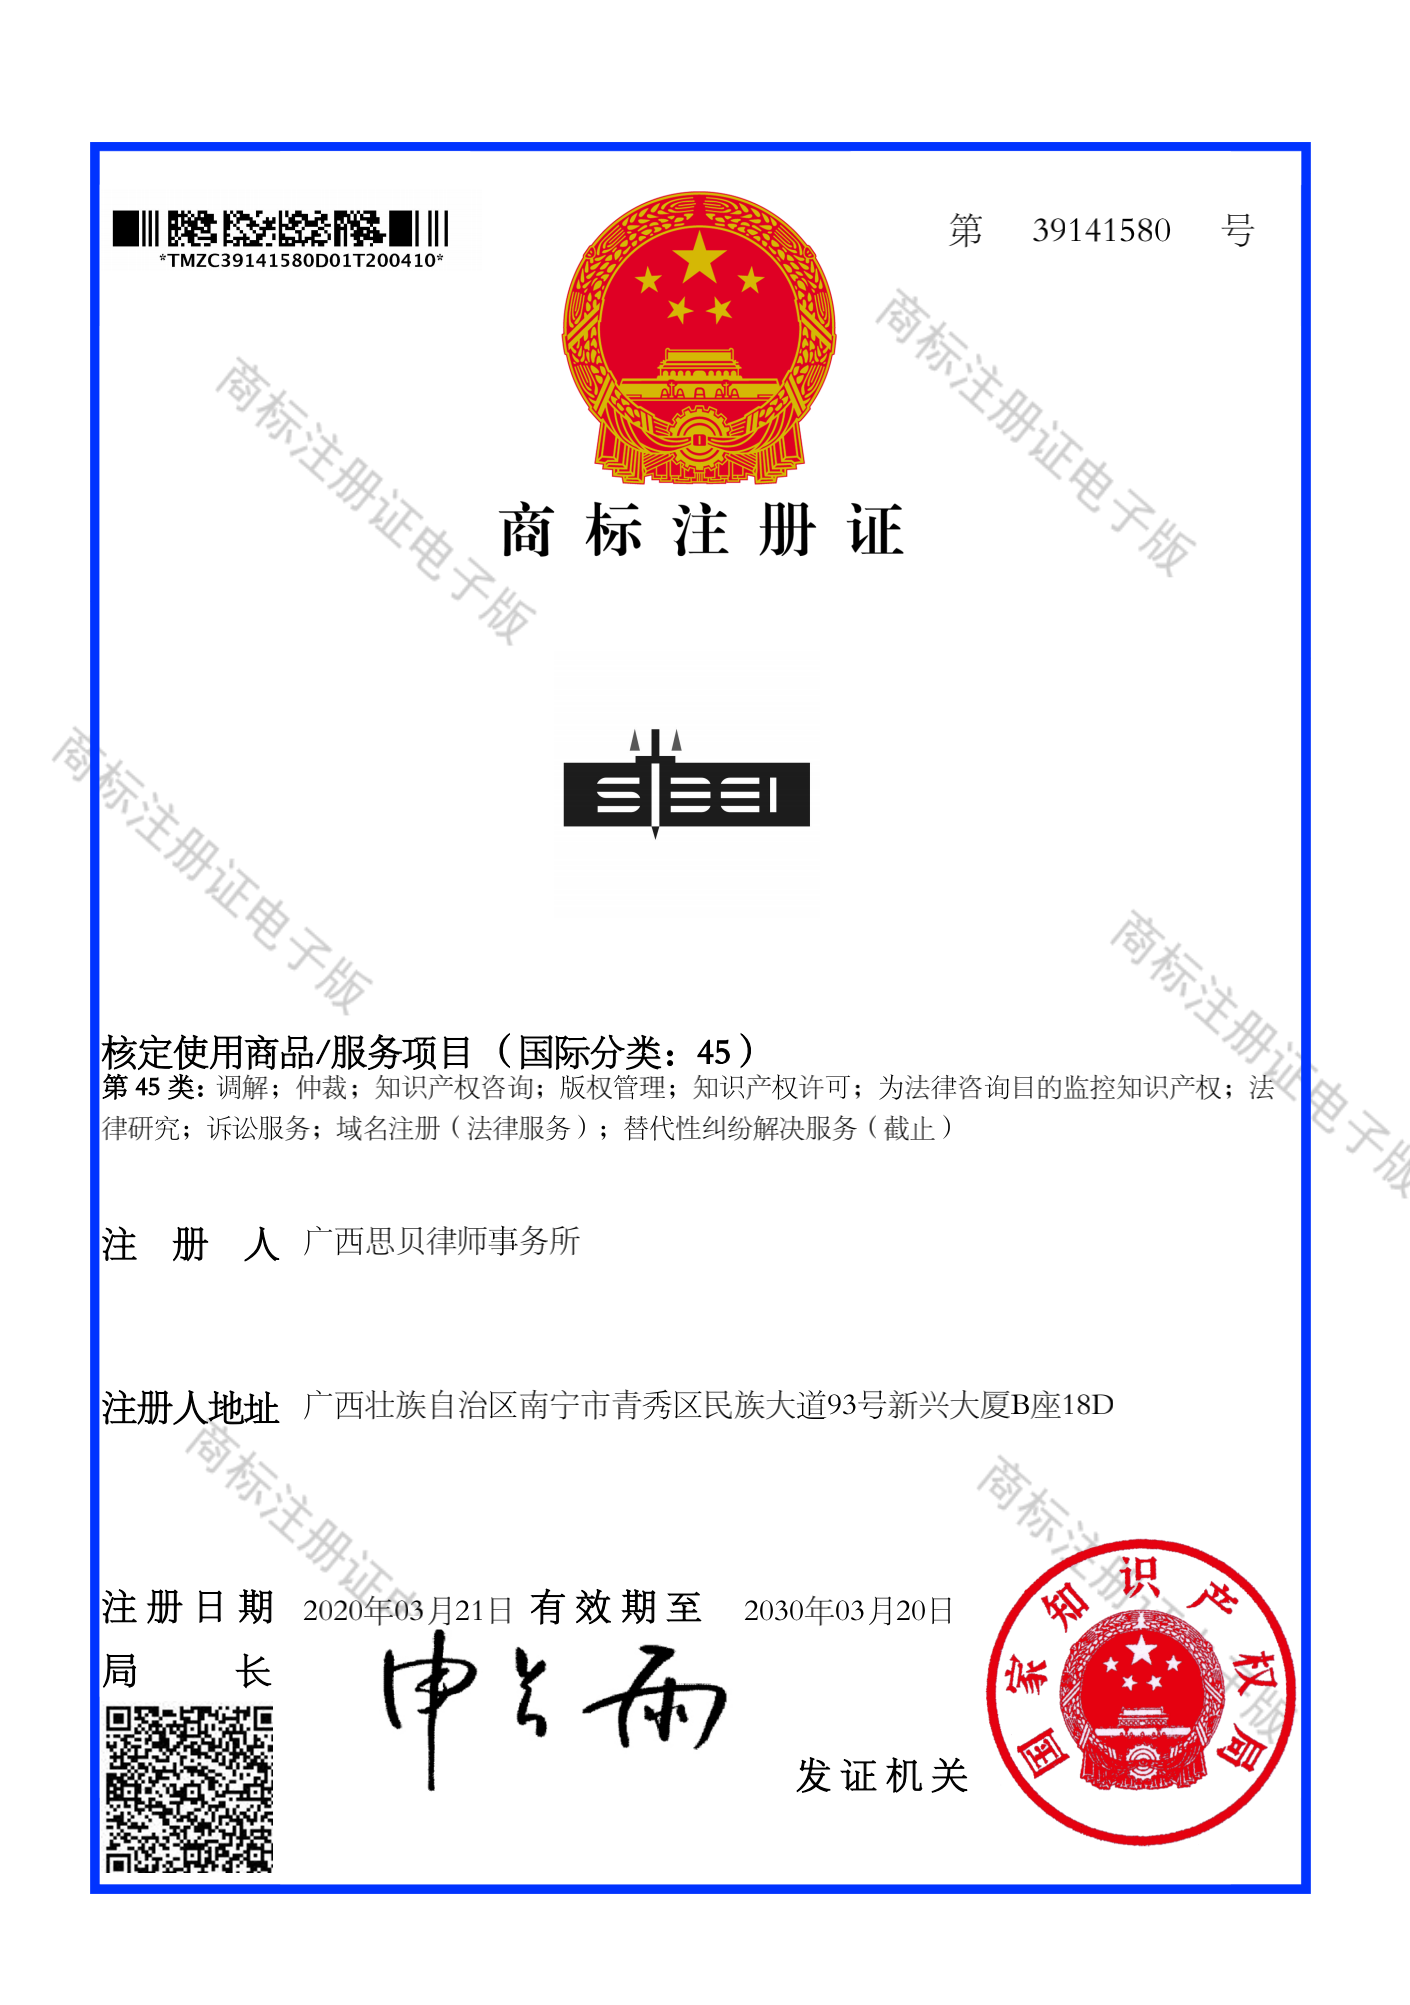 思贝logo商标证书_00.png